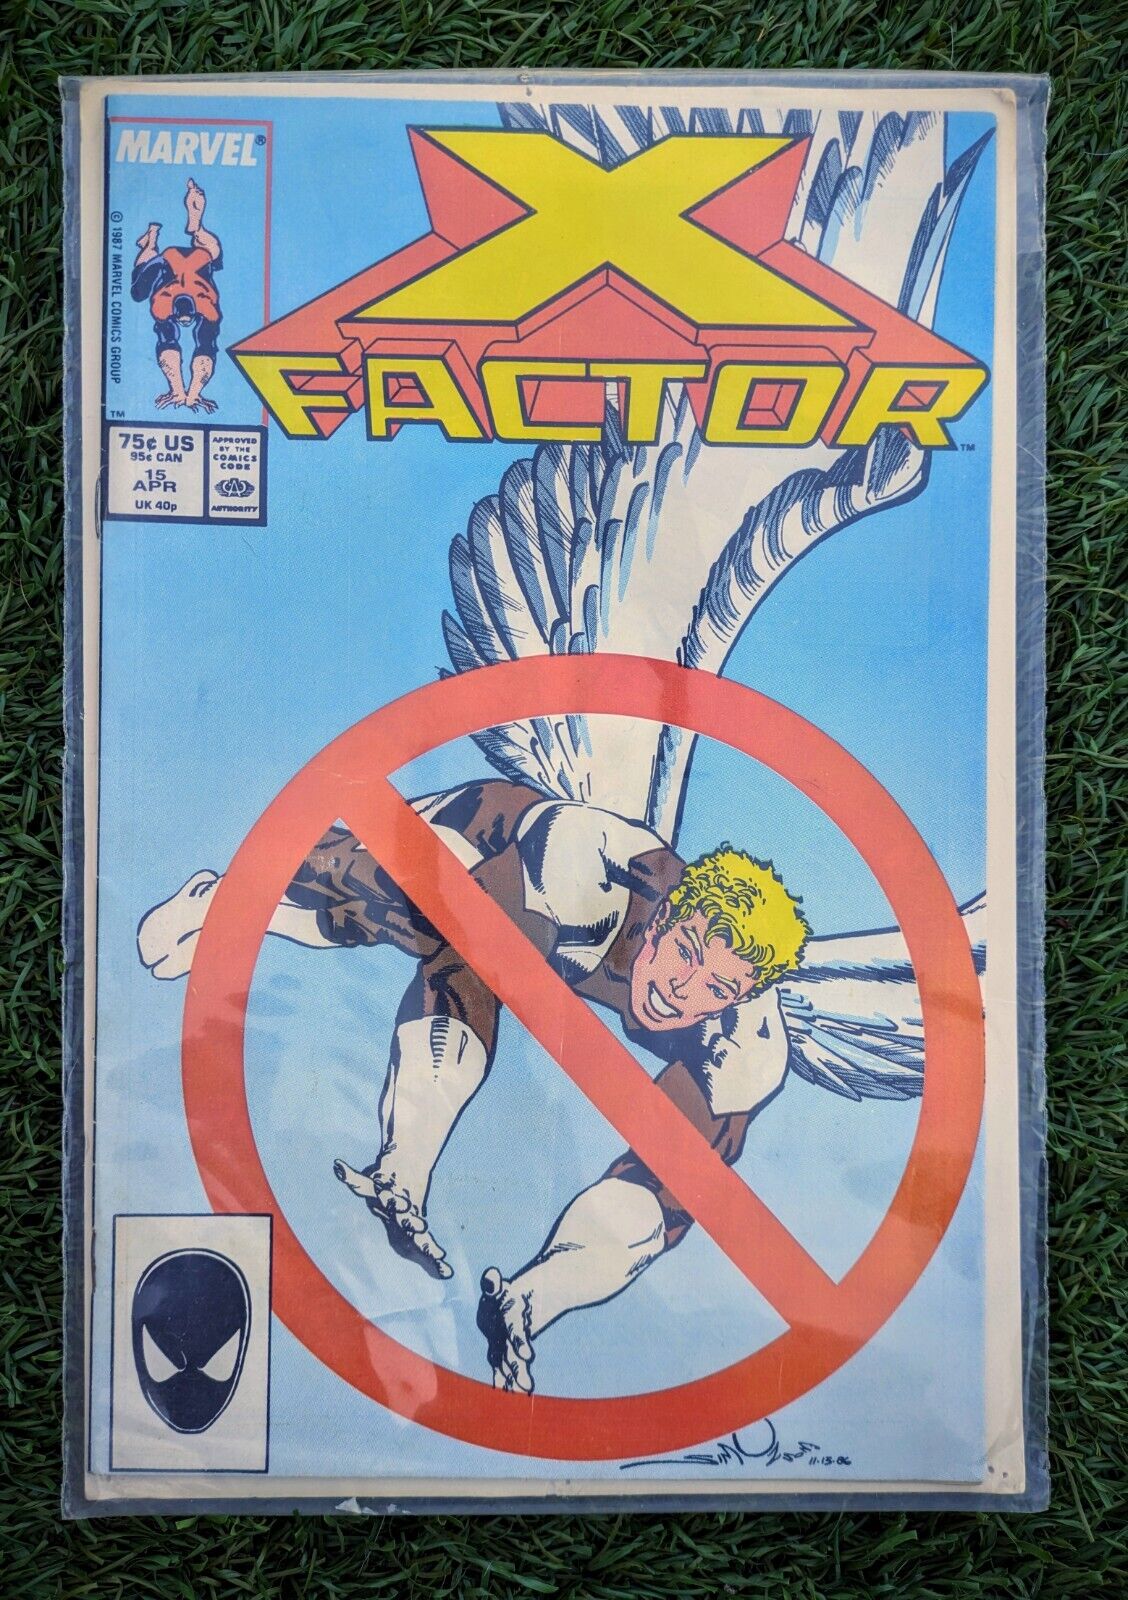 X-Factor #15 (Marvel Comics April 1987)